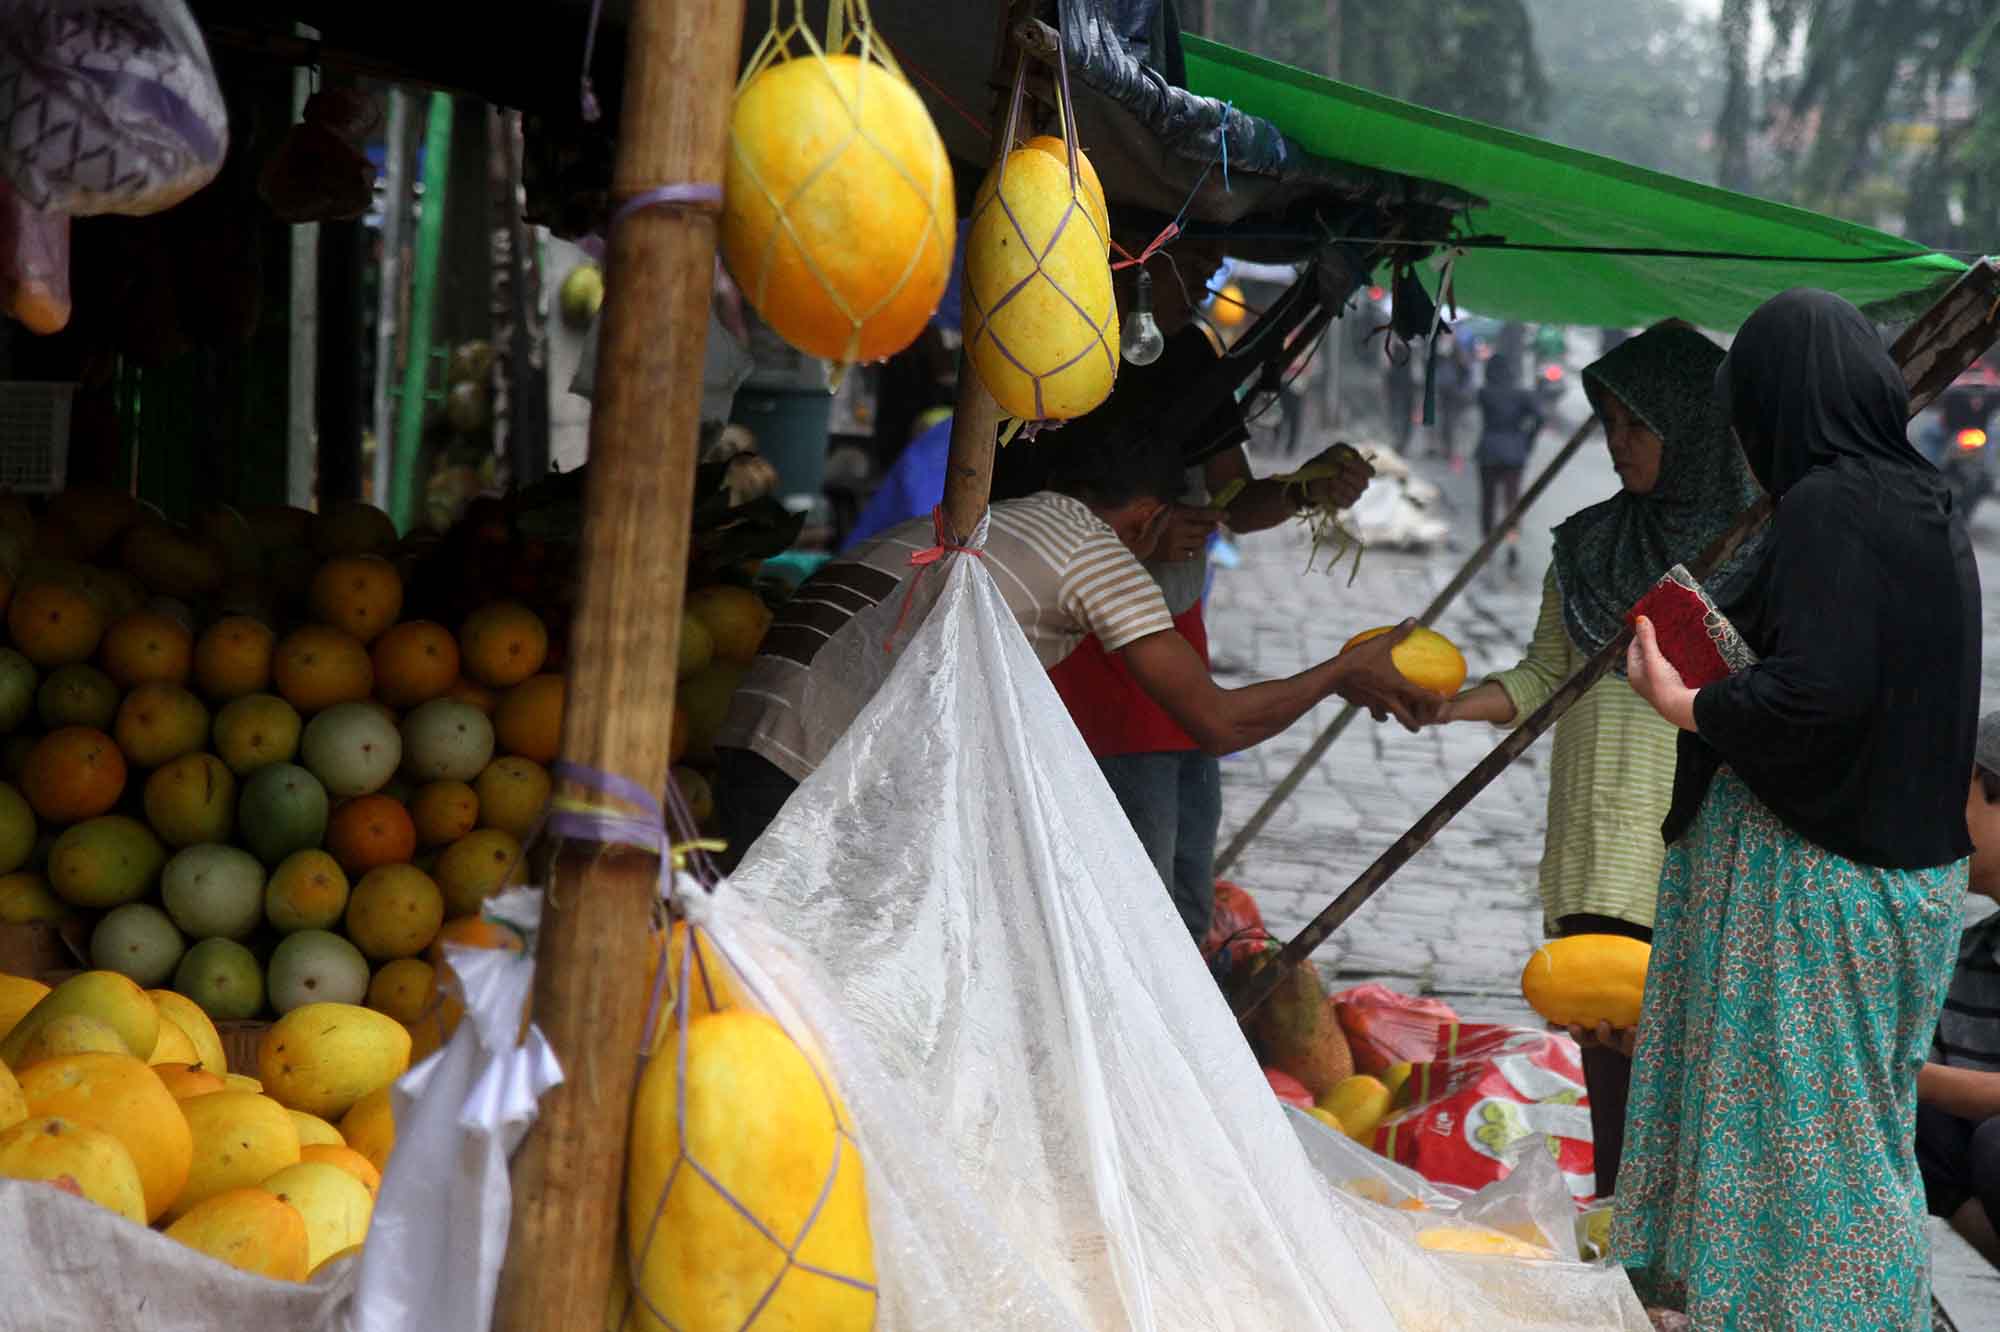 Penjual timun suri di Pasar Palmerah, Jakarta, Jumat (15/3).(Sinarharapan.com/Oke Atmaja)